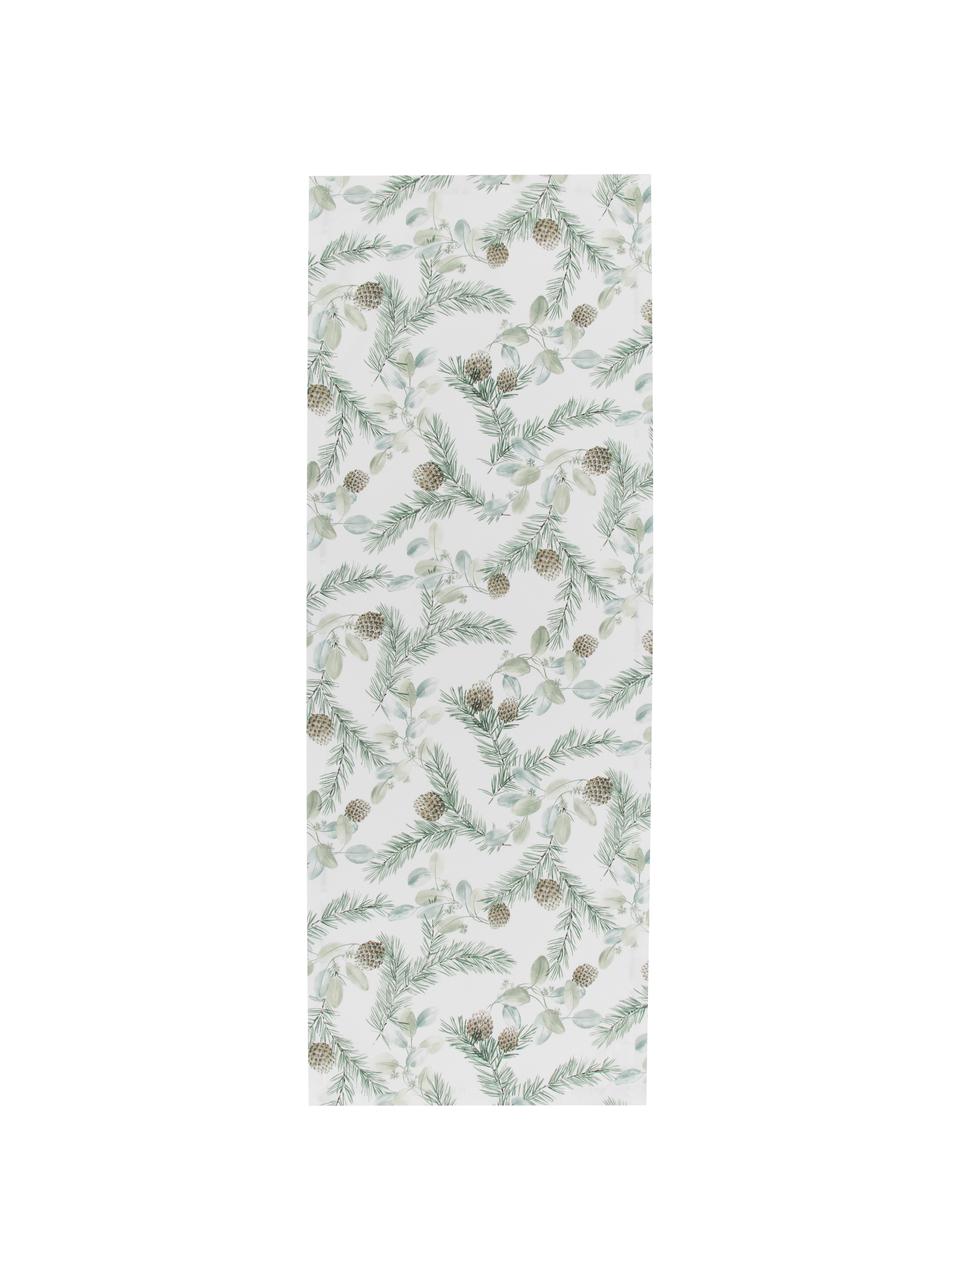 Bieżnik z bawełny Pinolo, 100% bawełna, Zielony, brązowy, biały, S 50 x D 140 cm